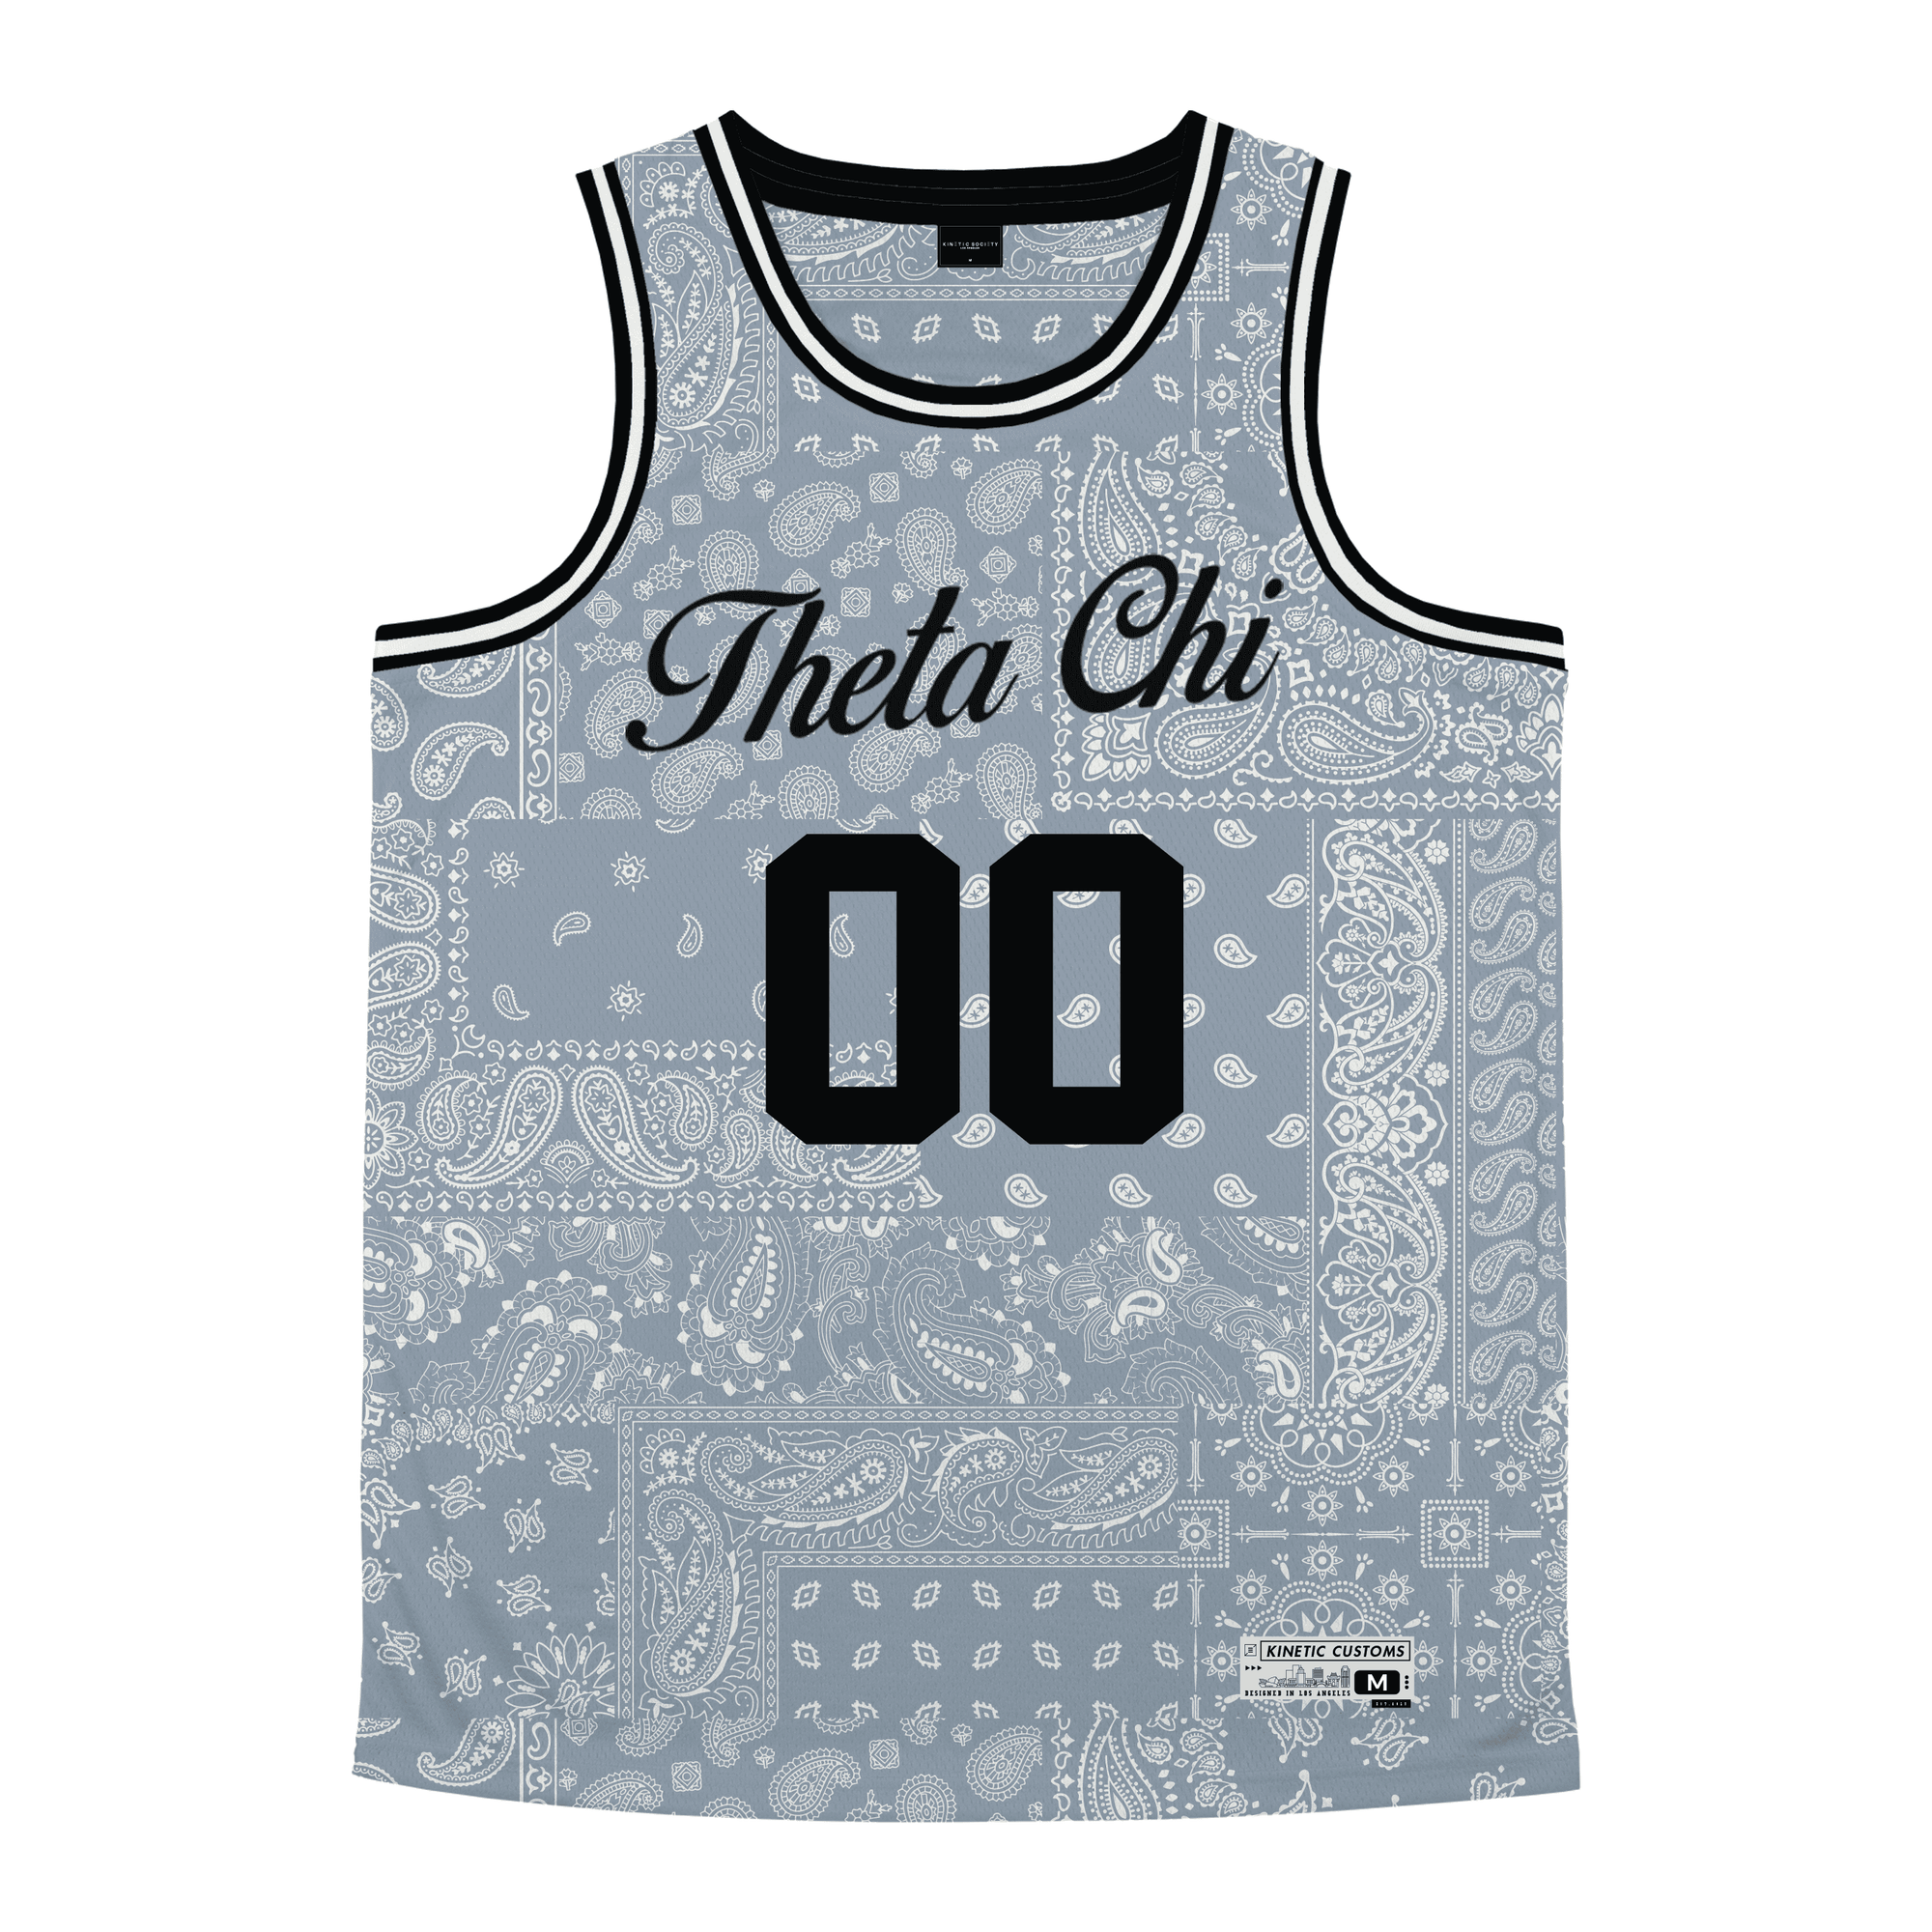 Theta Chi - Slate Bandana - Basketball Jersey